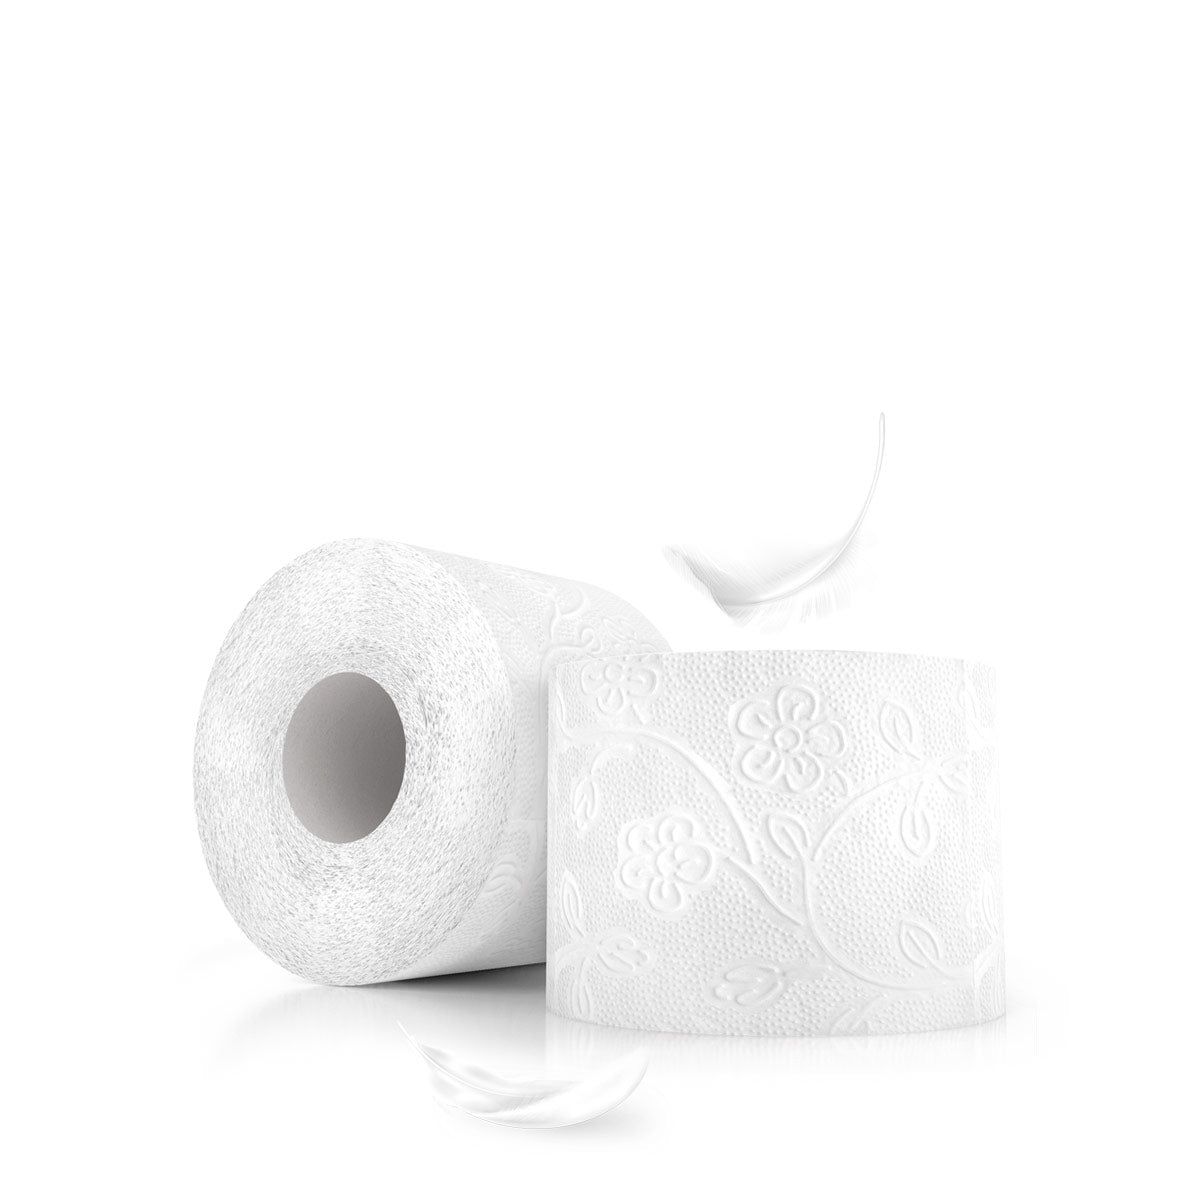 Toilettenpapier - Wöhrle - S' Beschde für dahoim!